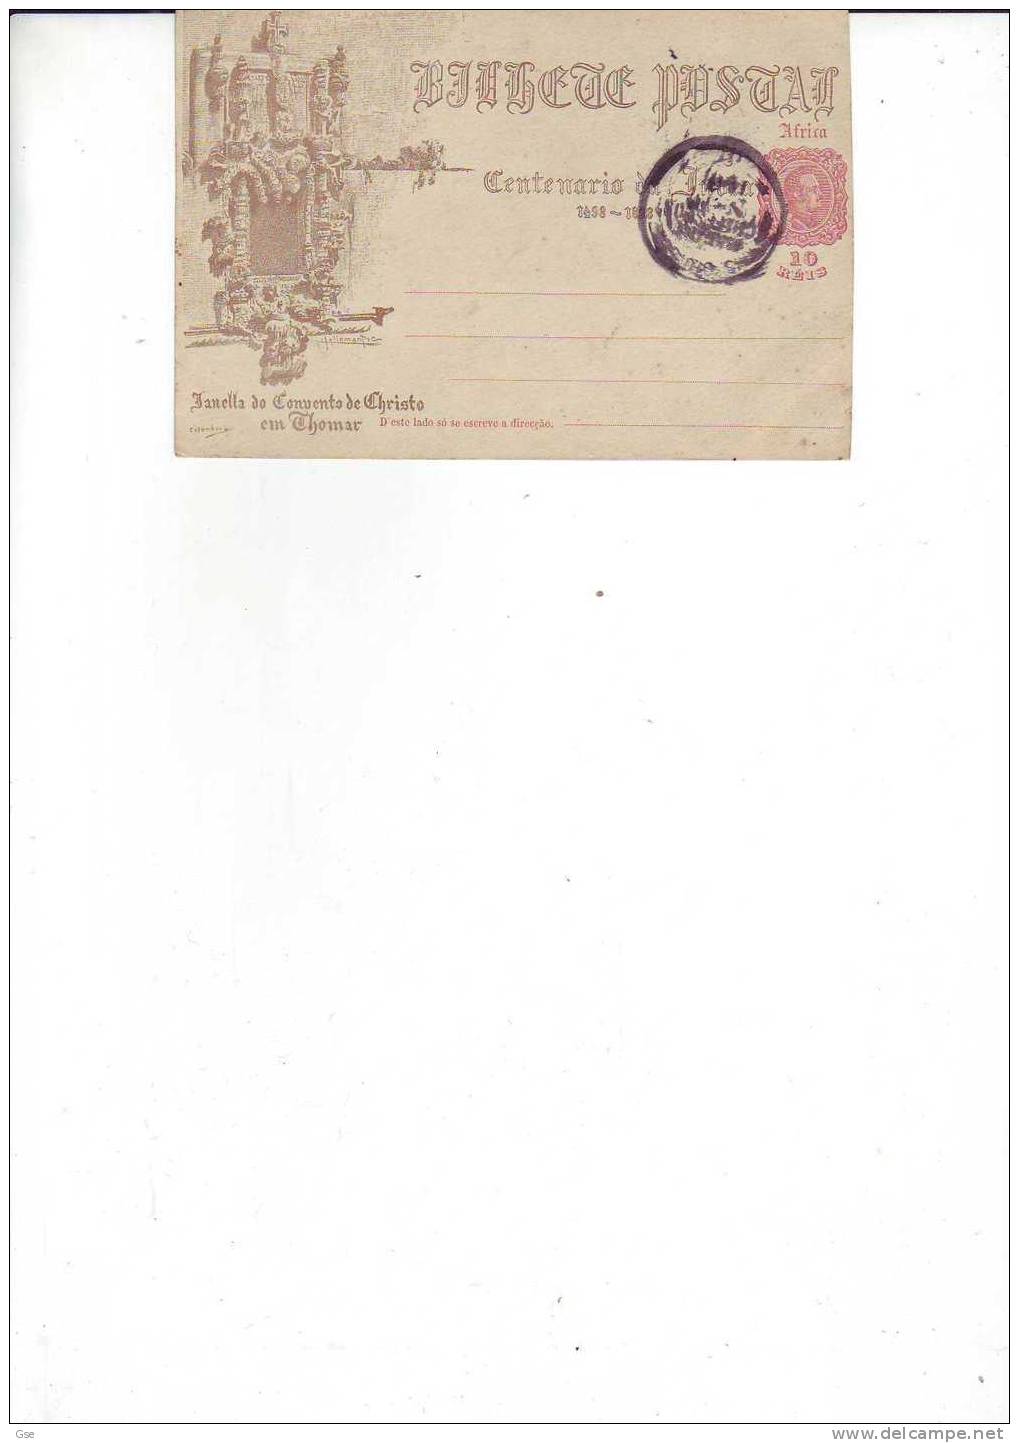 AFRICA PORTOGHESE- - Cartolina Postale Usata . "Fanella Do Convento De Cristo" - Africa Portuguesa